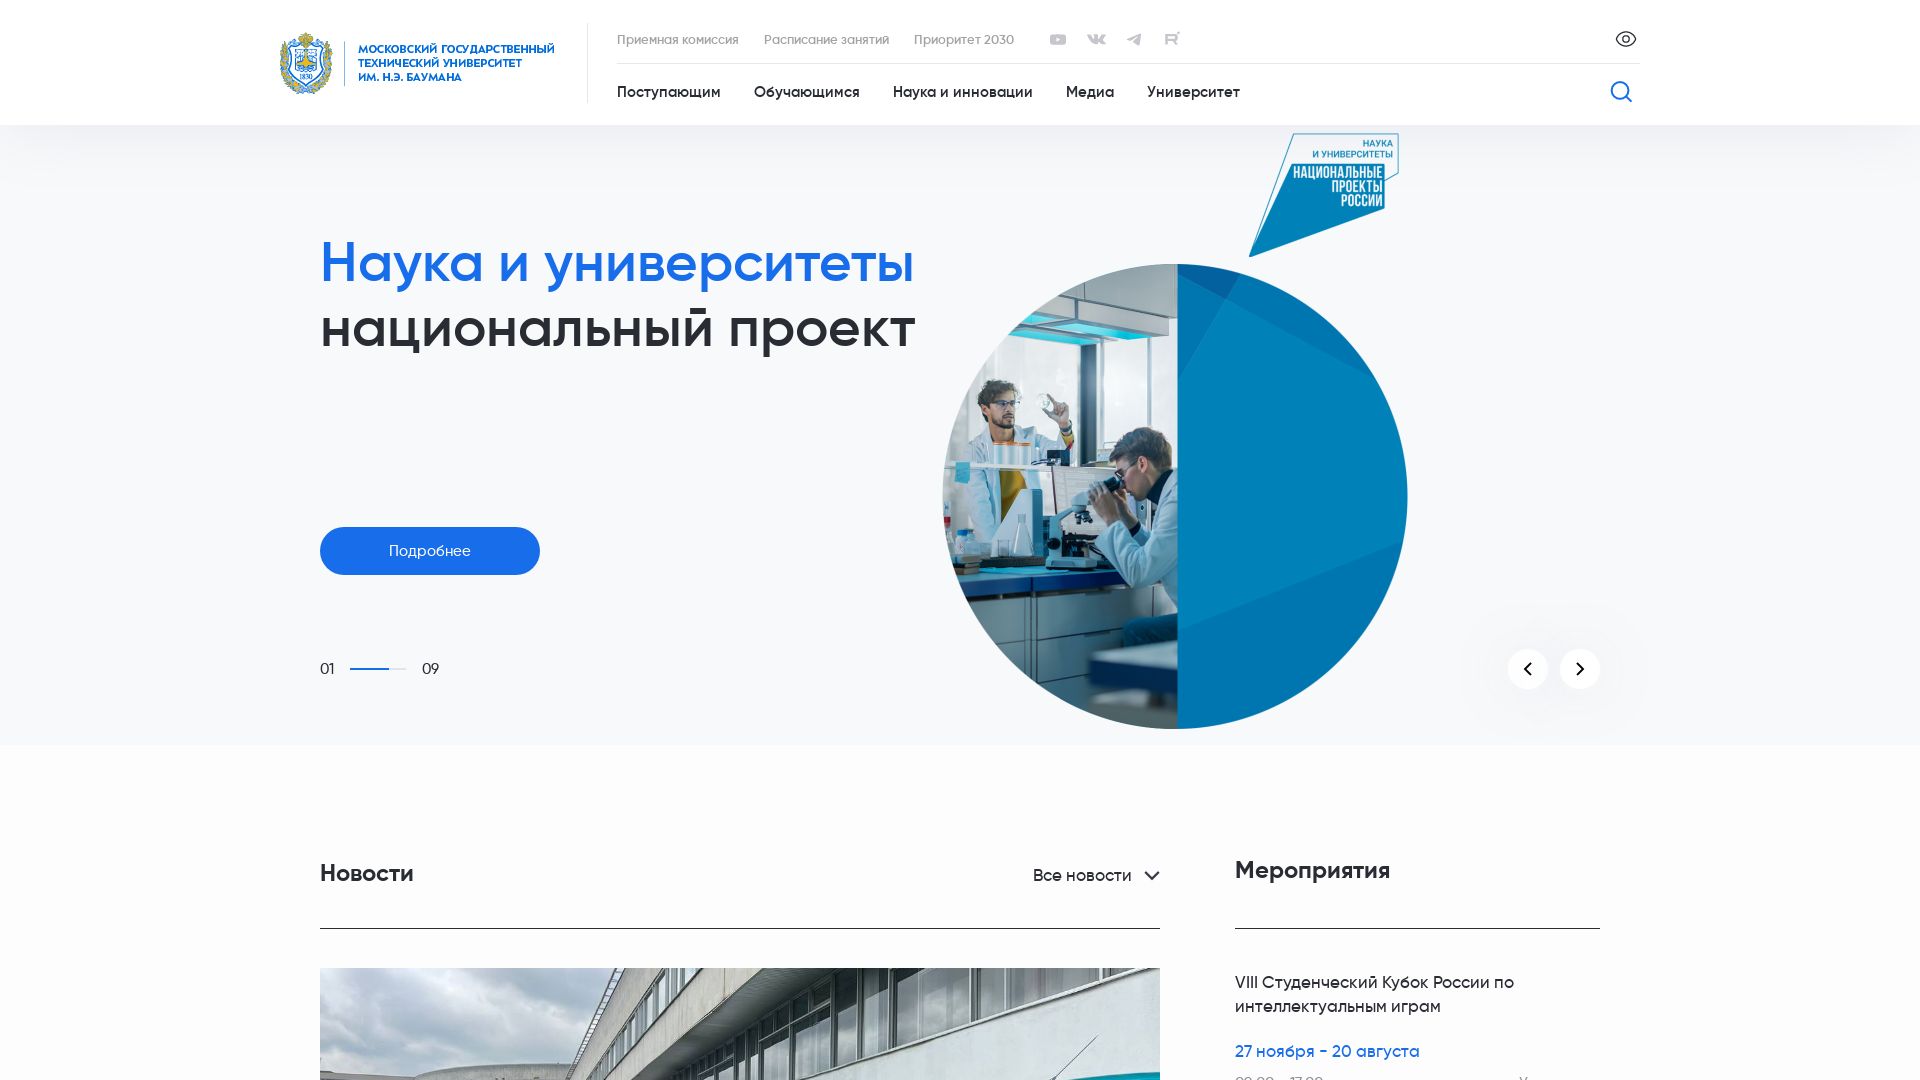 Website status bmstu.ru is   ONLINE